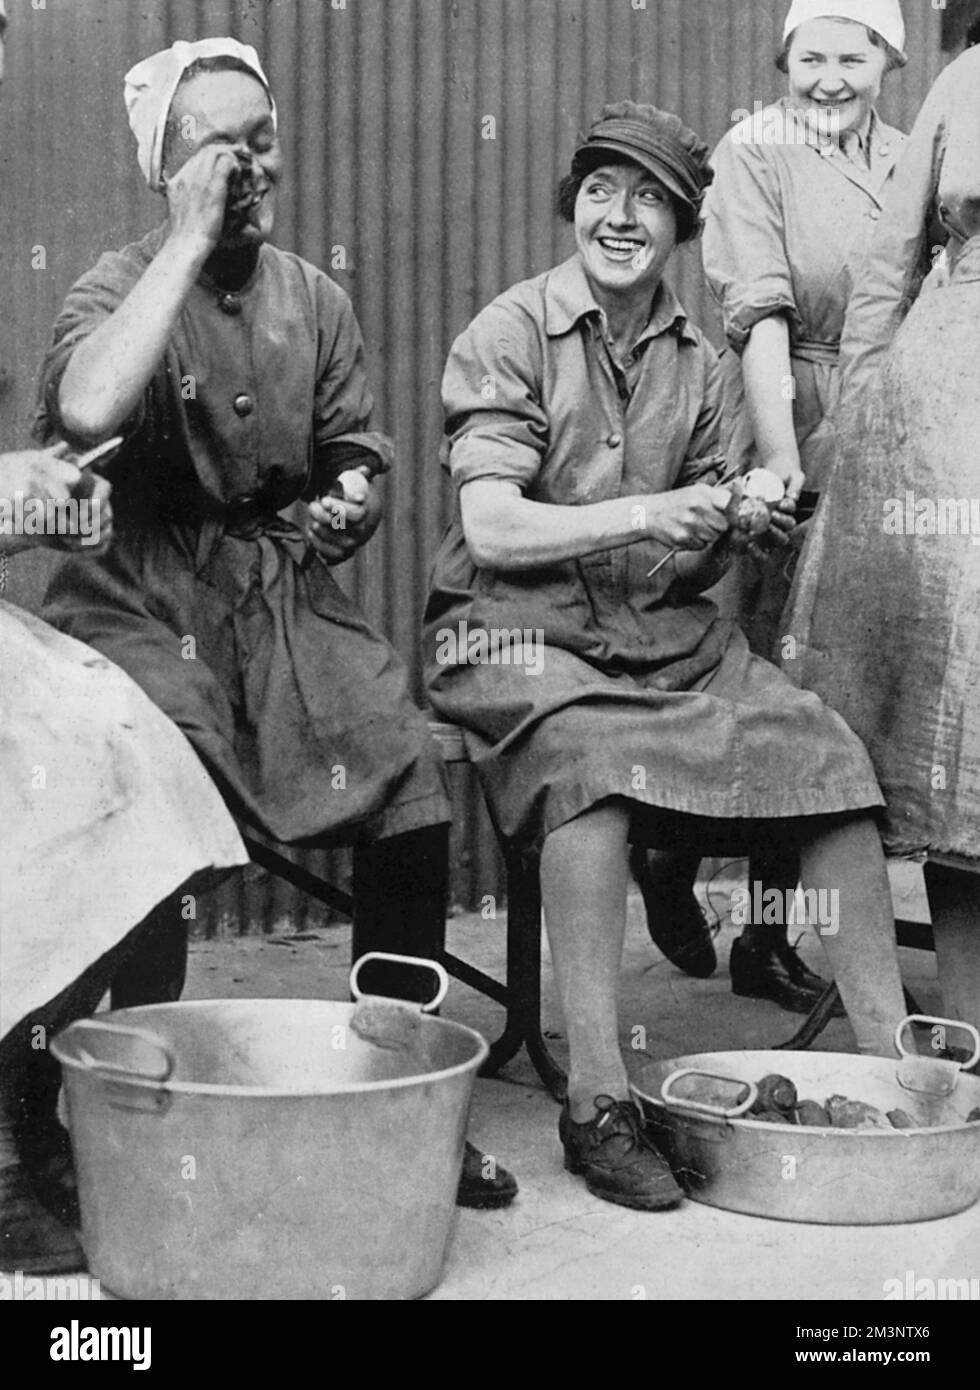 Un moment joyeux au cours du peeling des oignons avec la nouvelle Armée cuisine dans une école de cuisine de l'Armée dans le sud de l'Angleterre dans les premières semaines de la Seconde Guerre mondiale Date: 1939 Banque D'Images